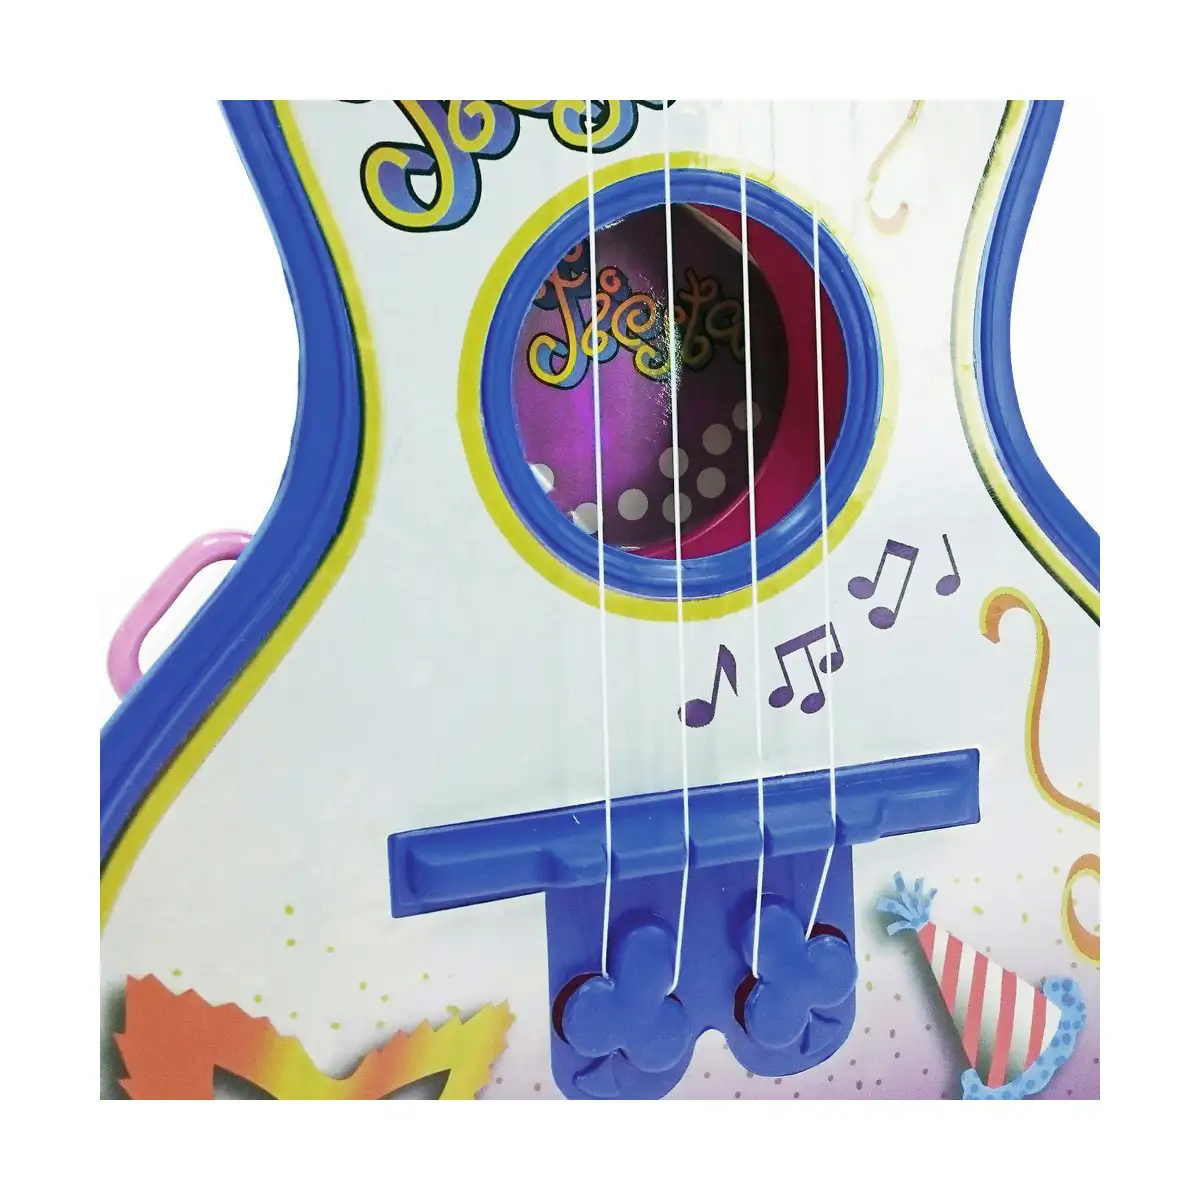 Guitare pour Enfant Reig Party Bleu Blanc 4 Cordes - DIAYTAR SÉNÉGAL